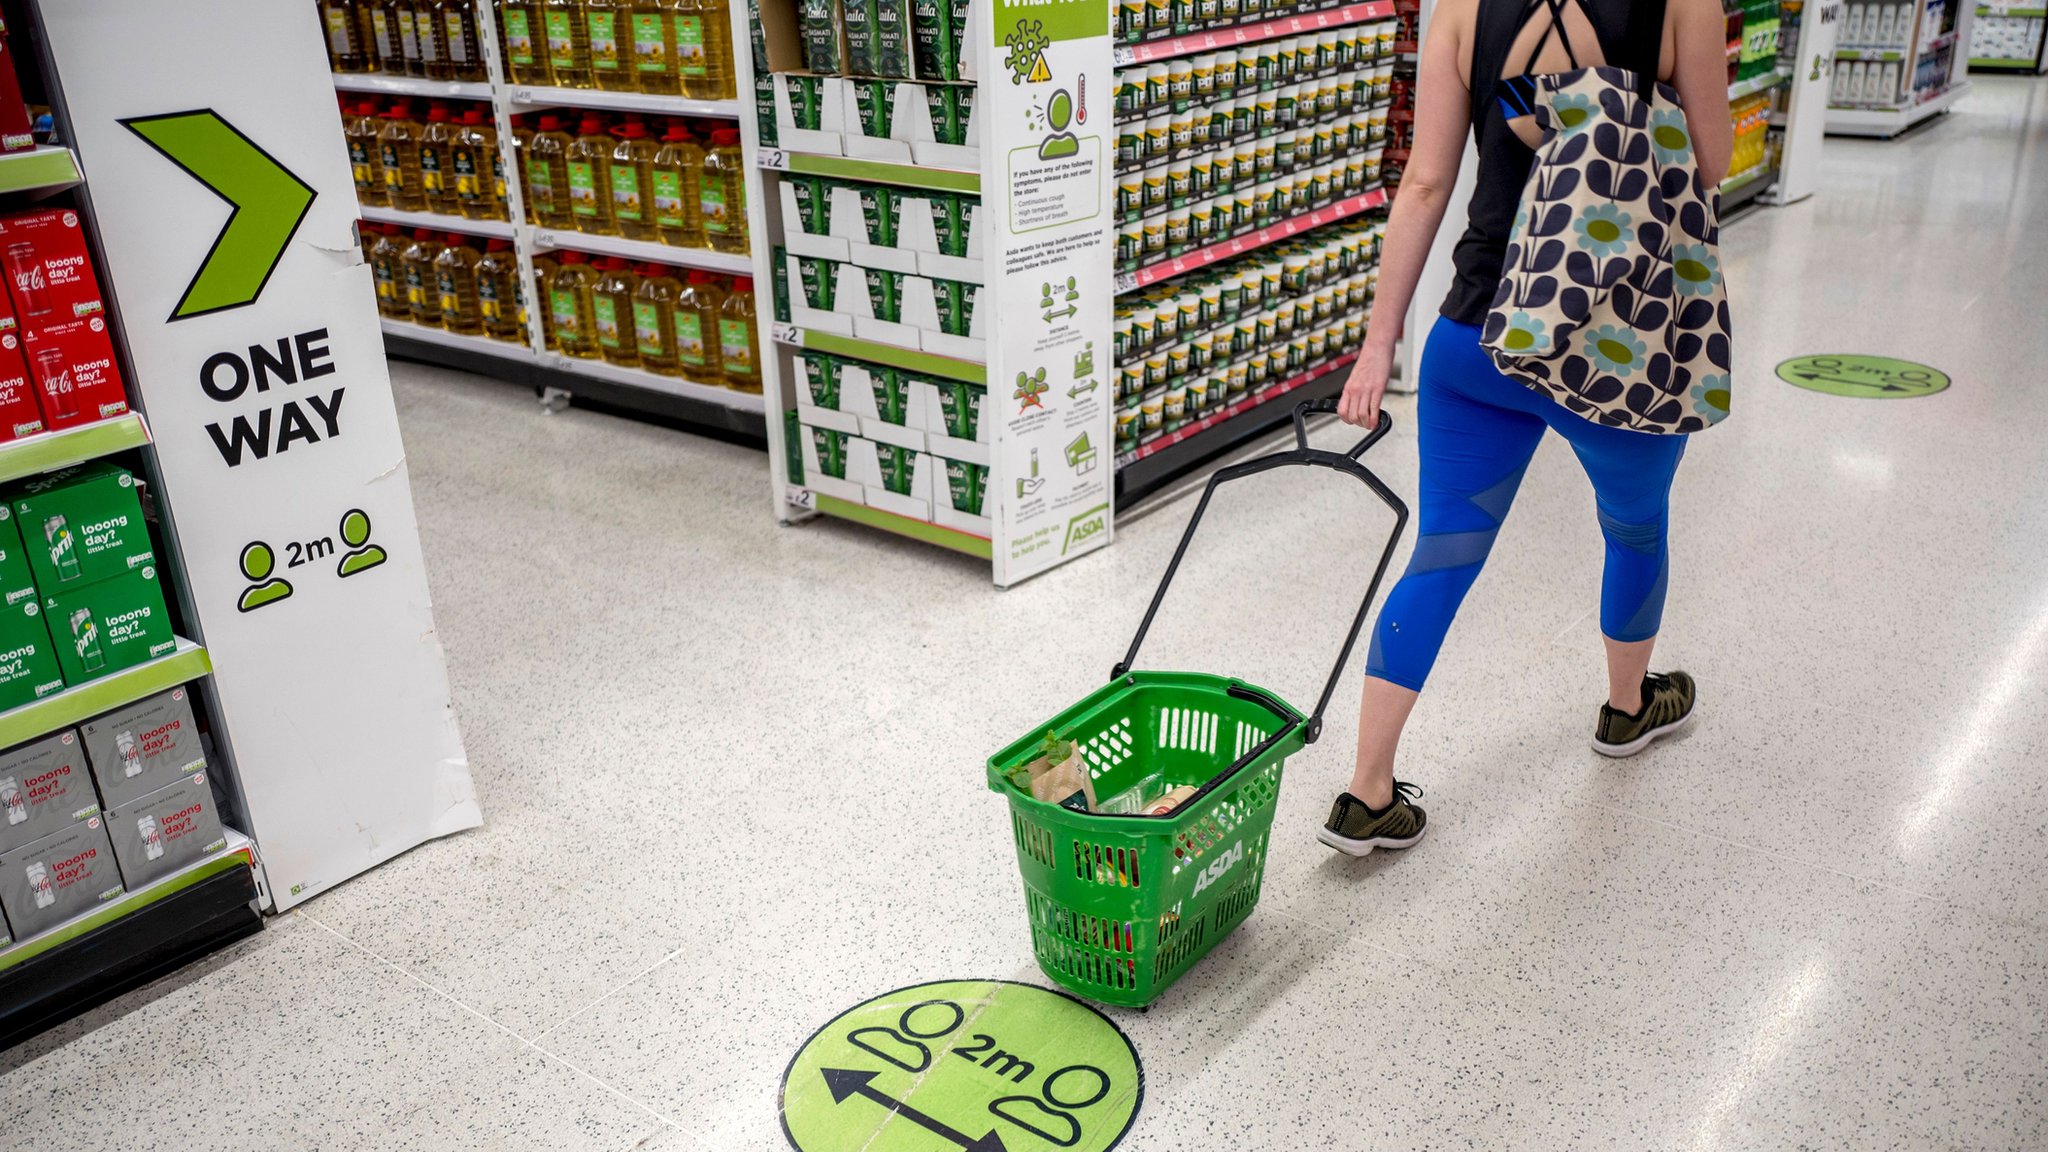 Walmart vende participação na rede de supermercados Asda